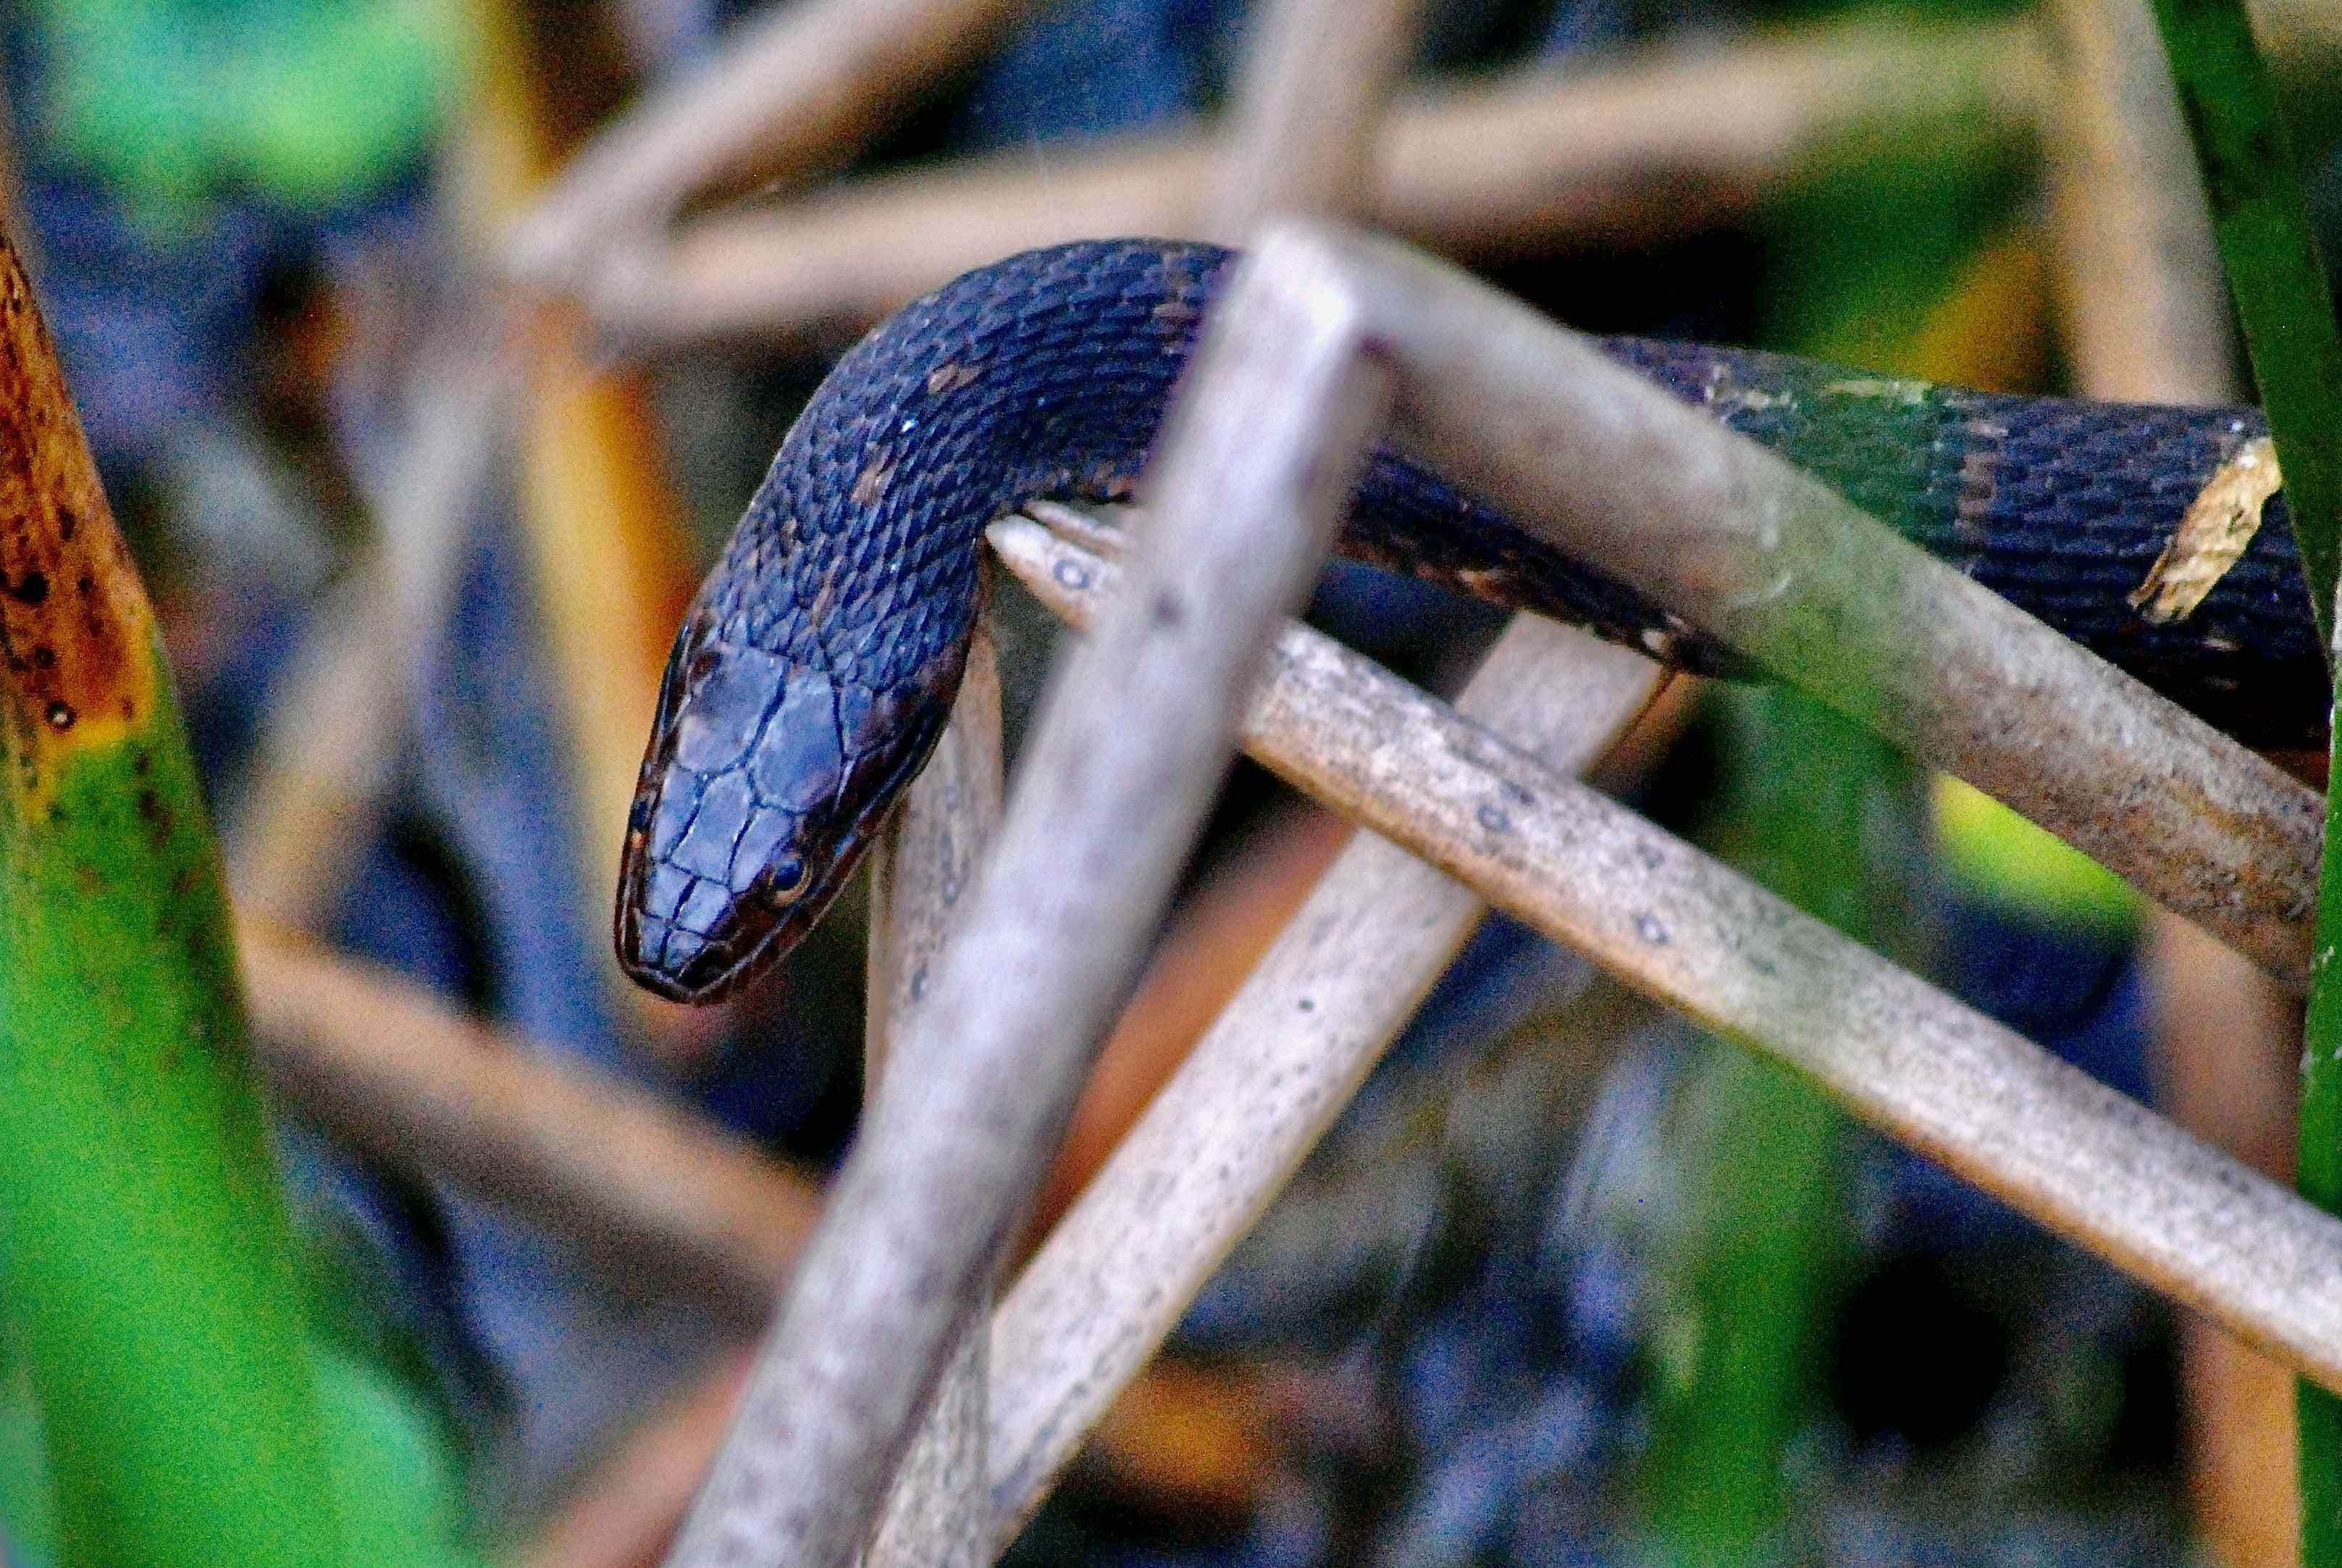 Florida water snake